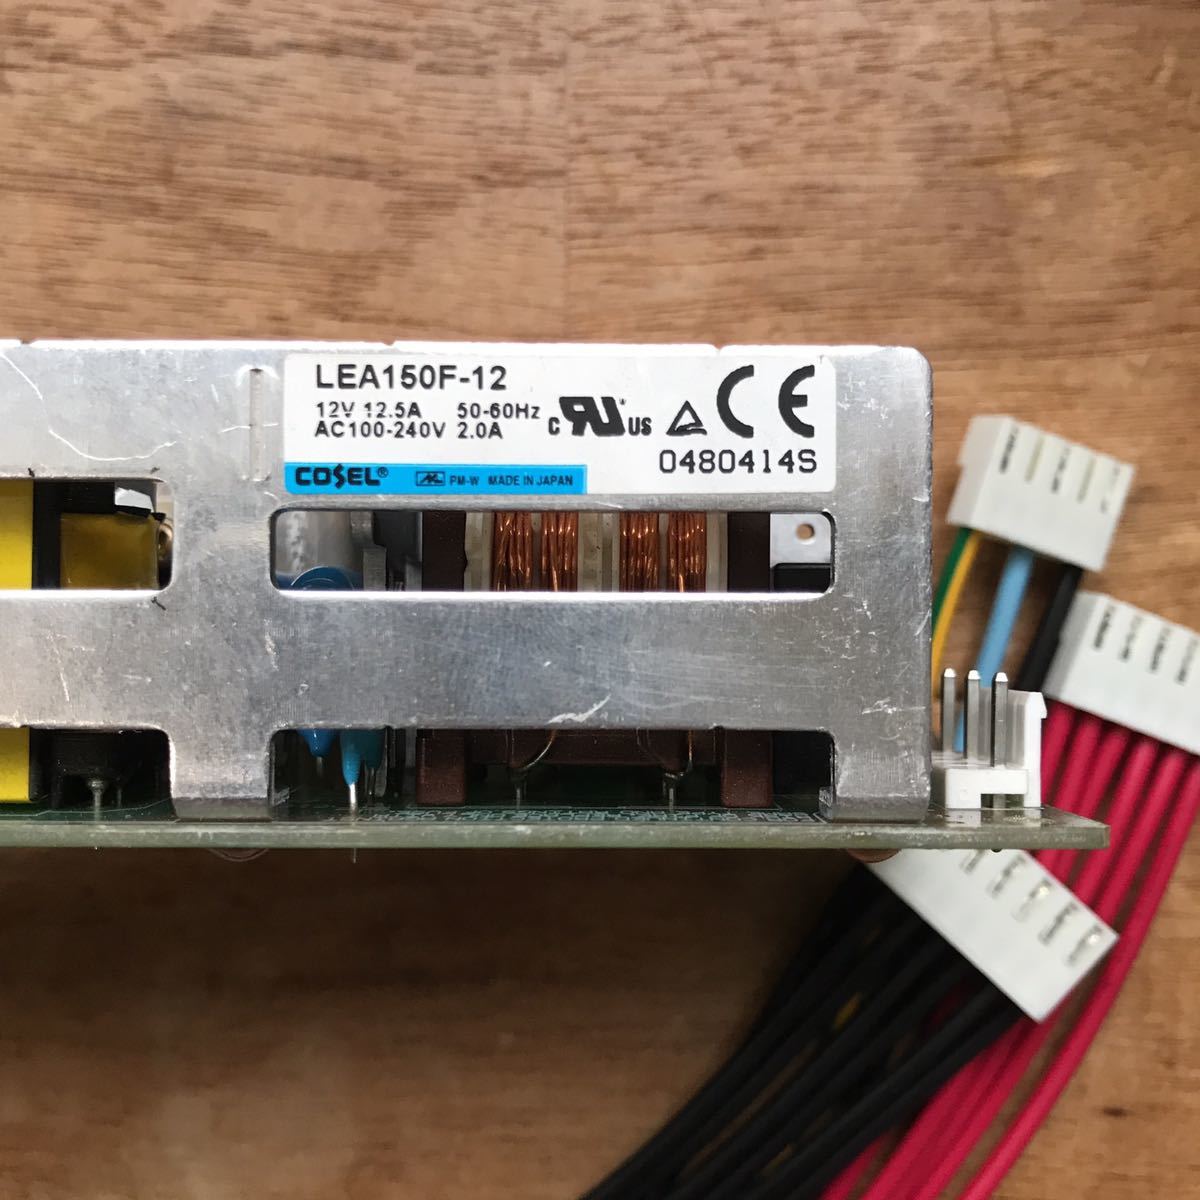 スイッチング電源 AC/DC電源 DC12V 12.5A出力 基板タイプ 150W ケーブル付き LEA150F-12 コーセル COSEL_画像2